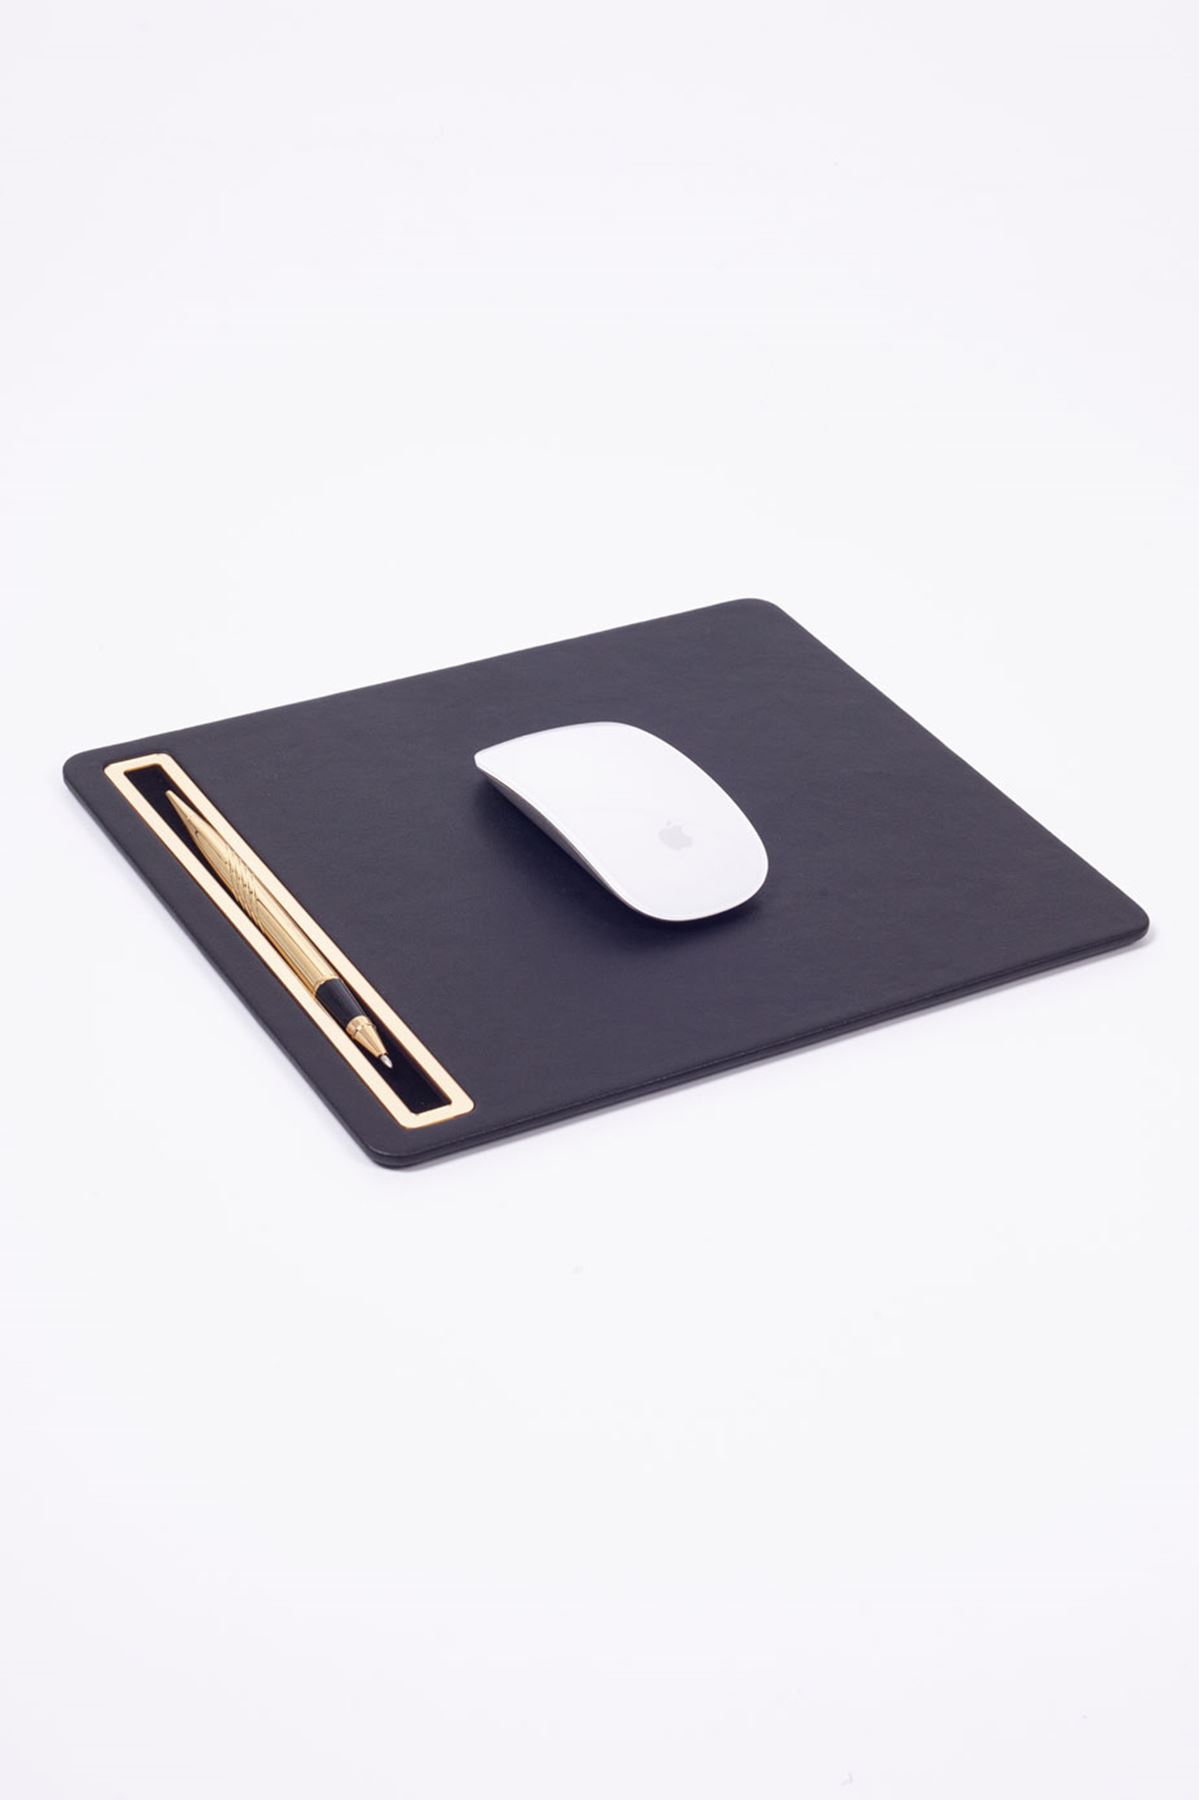 Deri Mousepad Düz Siyah Gold Detaylı